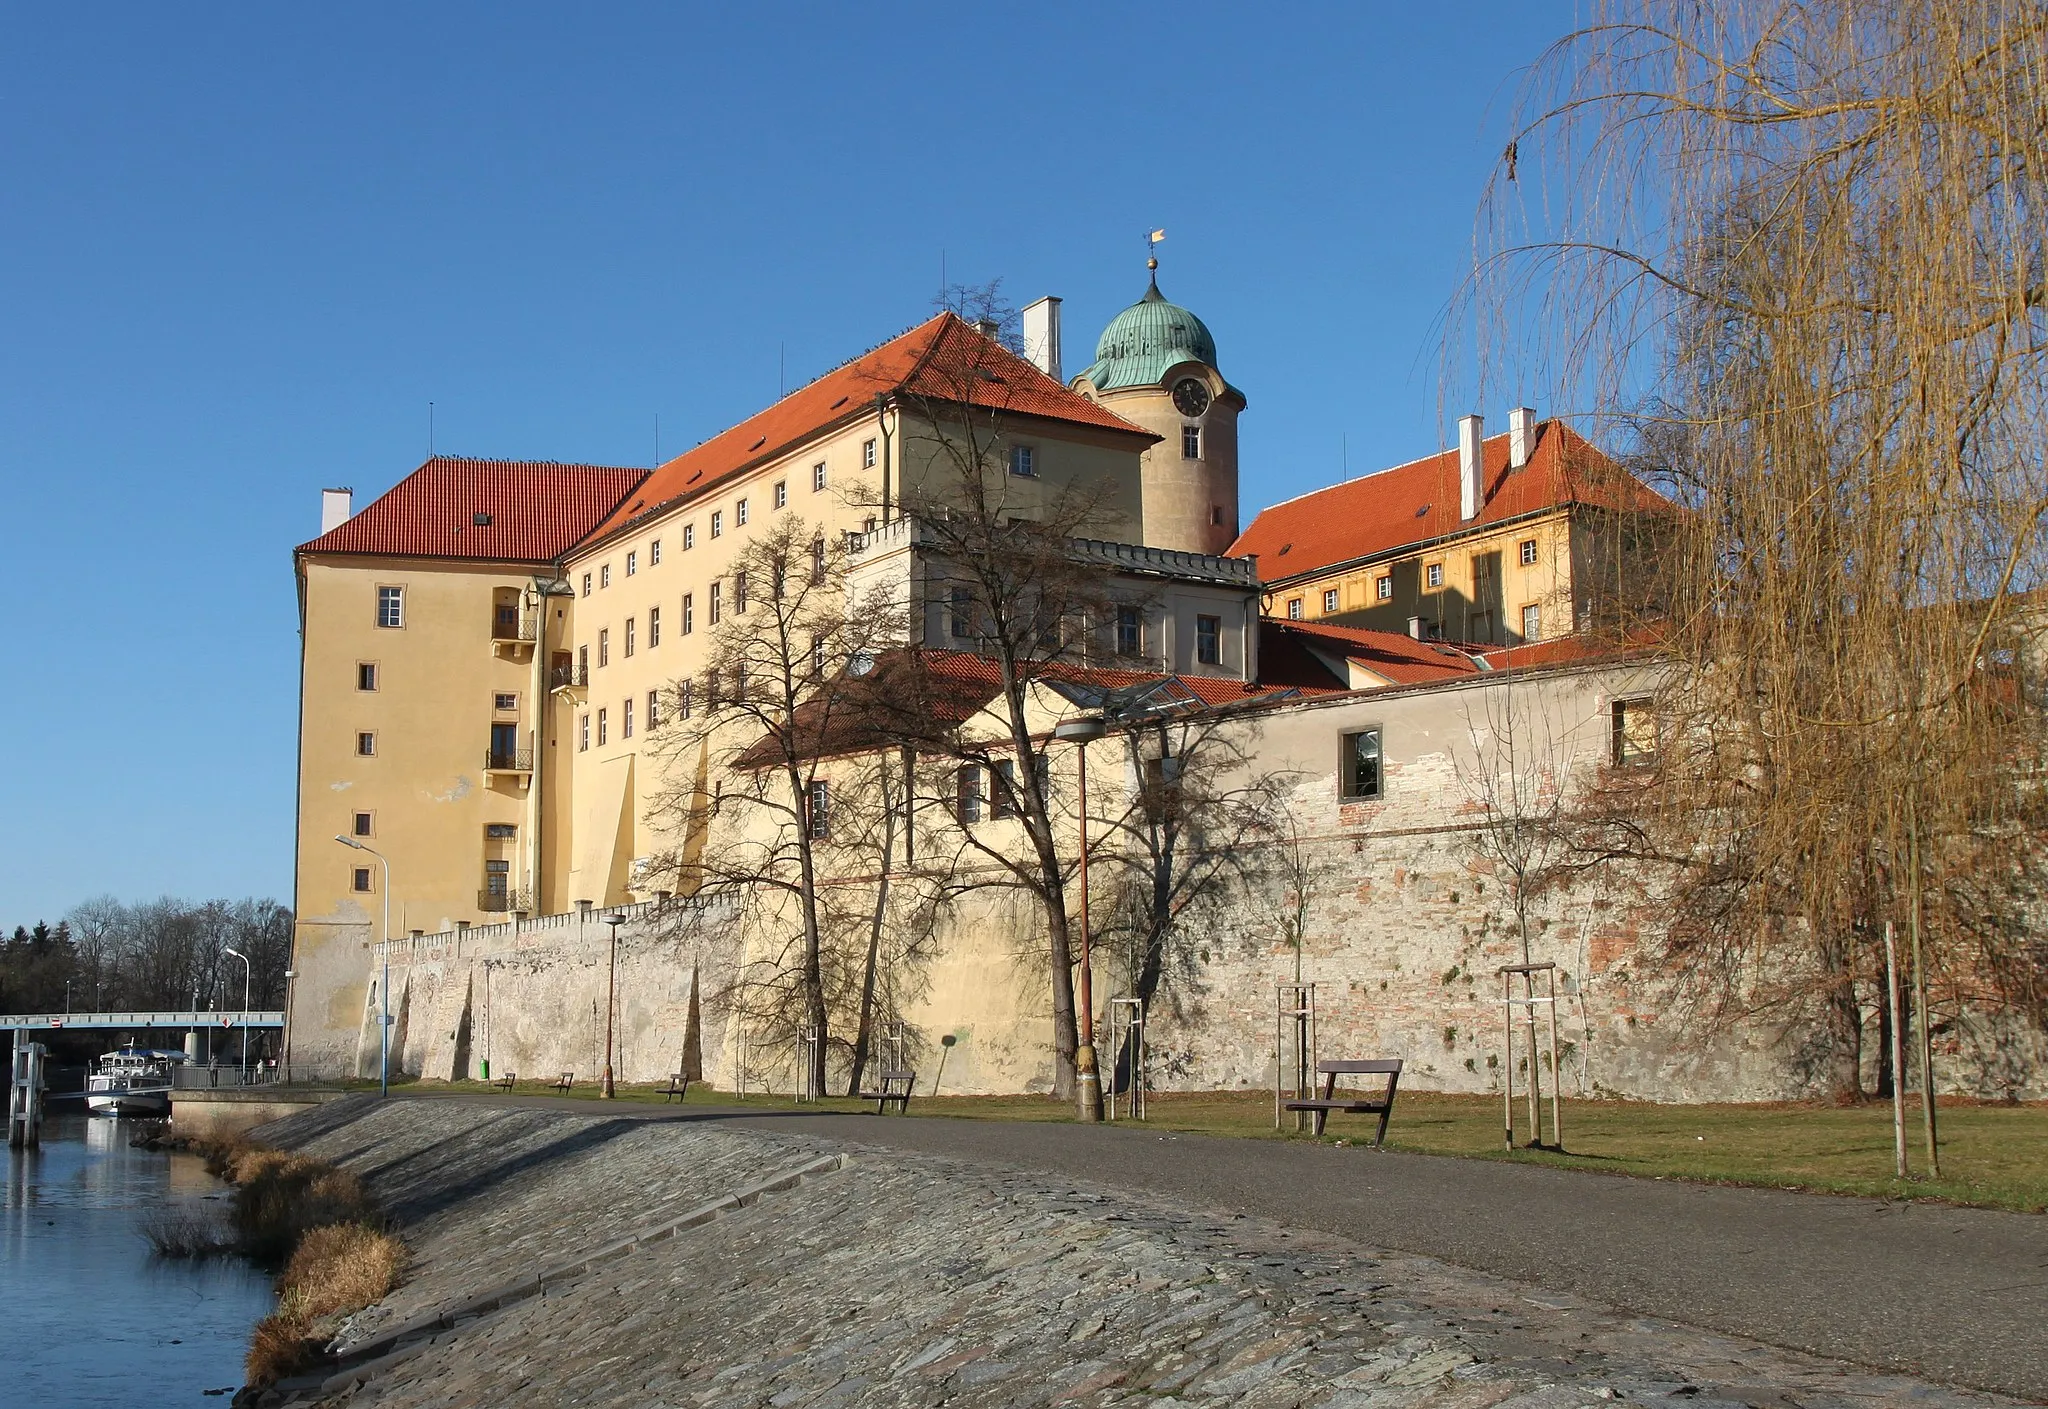 Photo showing: Castle in the city of Poděbrady, Czech Republic